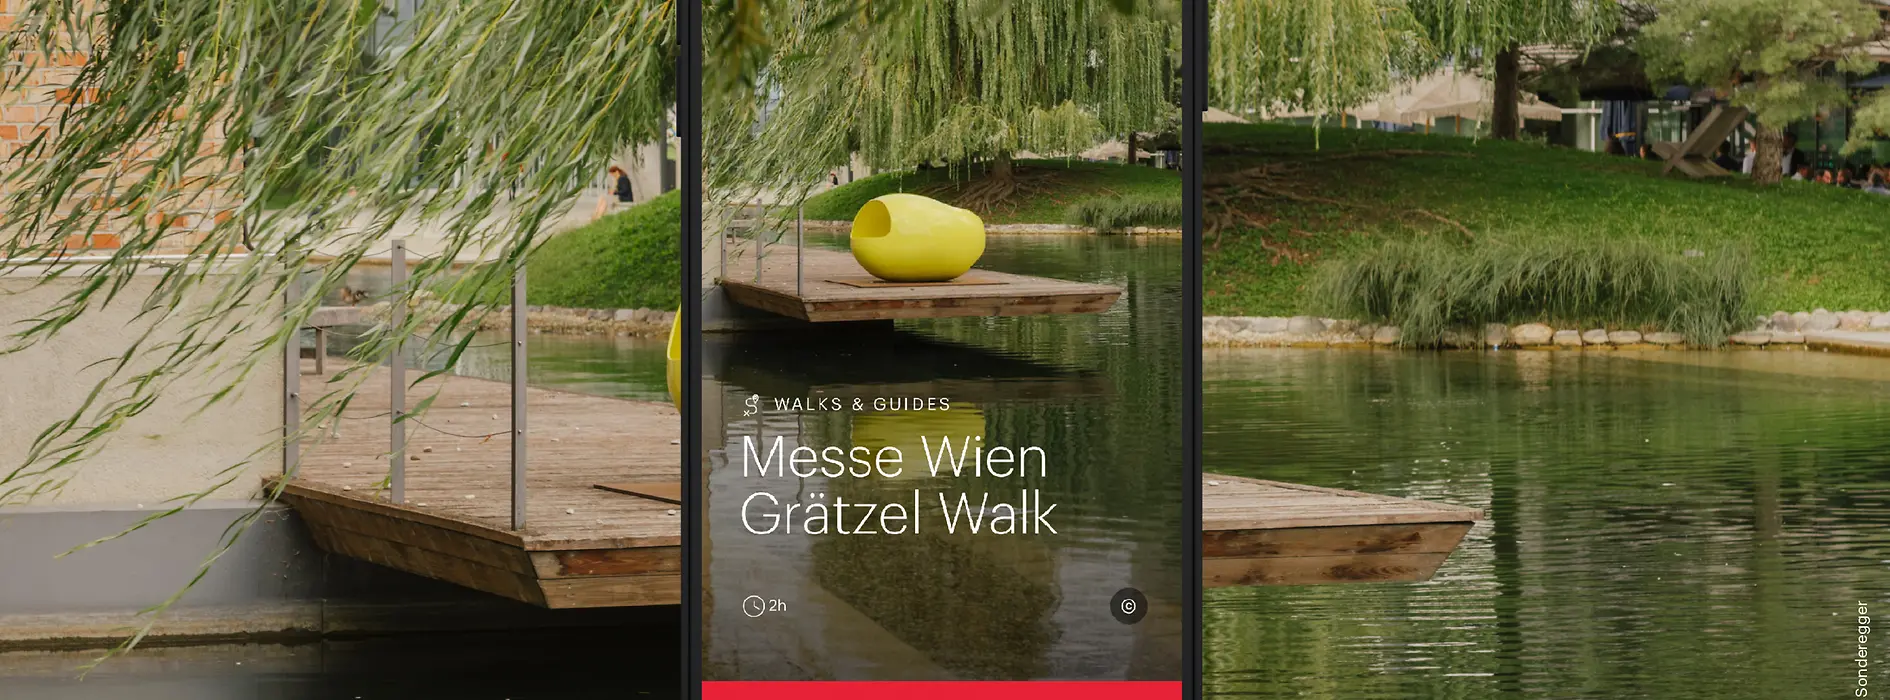 Promotion de la promenade ivie dans le quartier du Messe Wien - Plans d’eaux bordés d’arbres et d’œuvres d’art